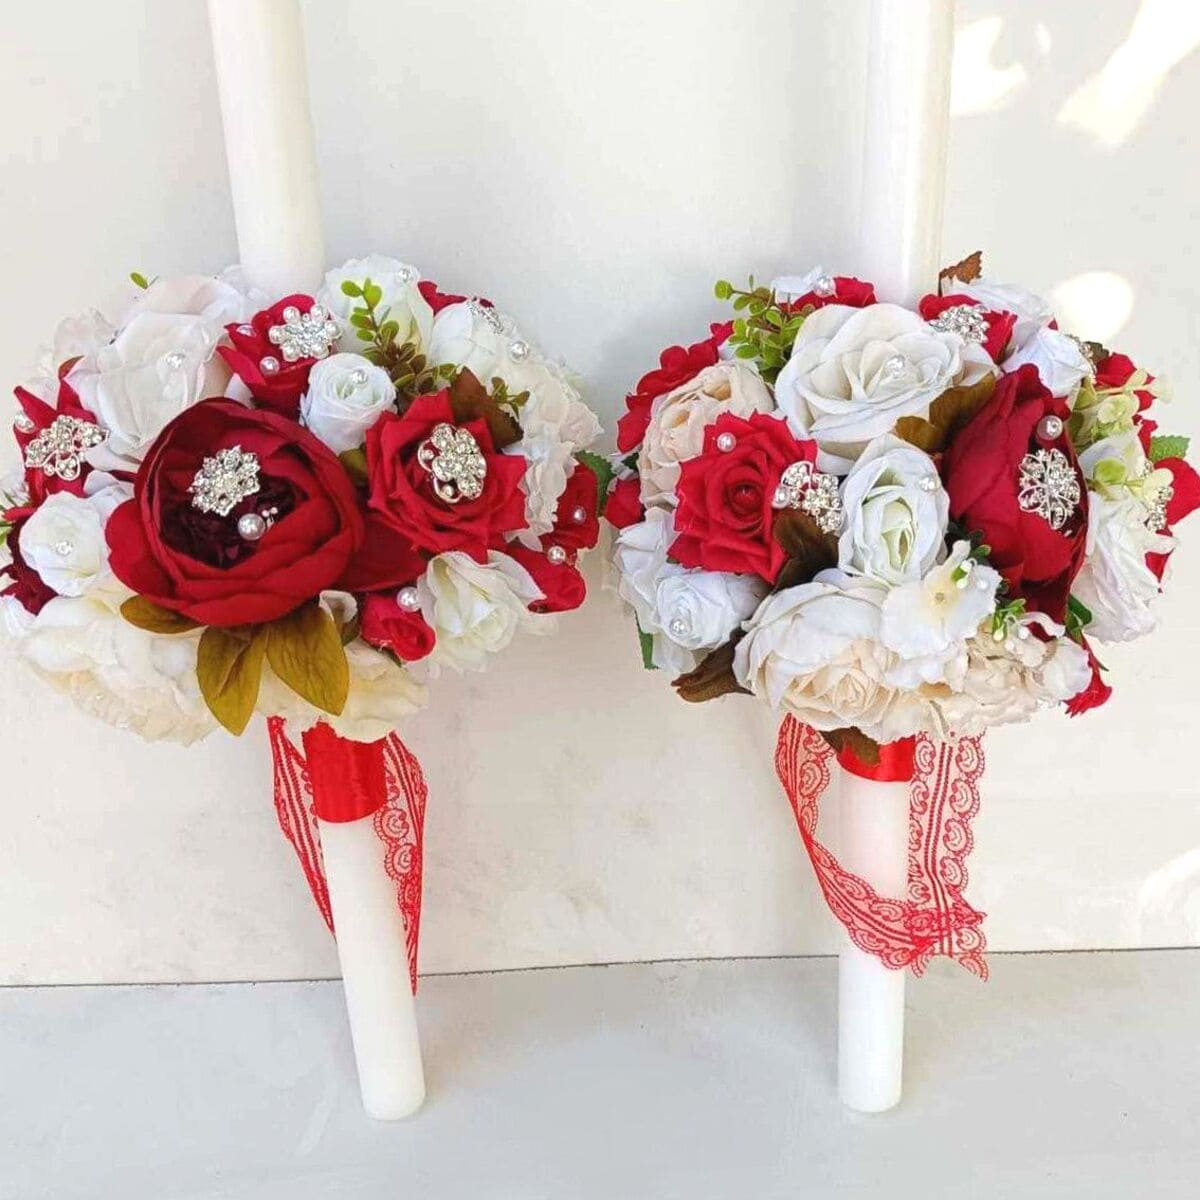 Lumanare subtire decorata cu flori de matase si bijuterii, rosu-alb – FEIS309011